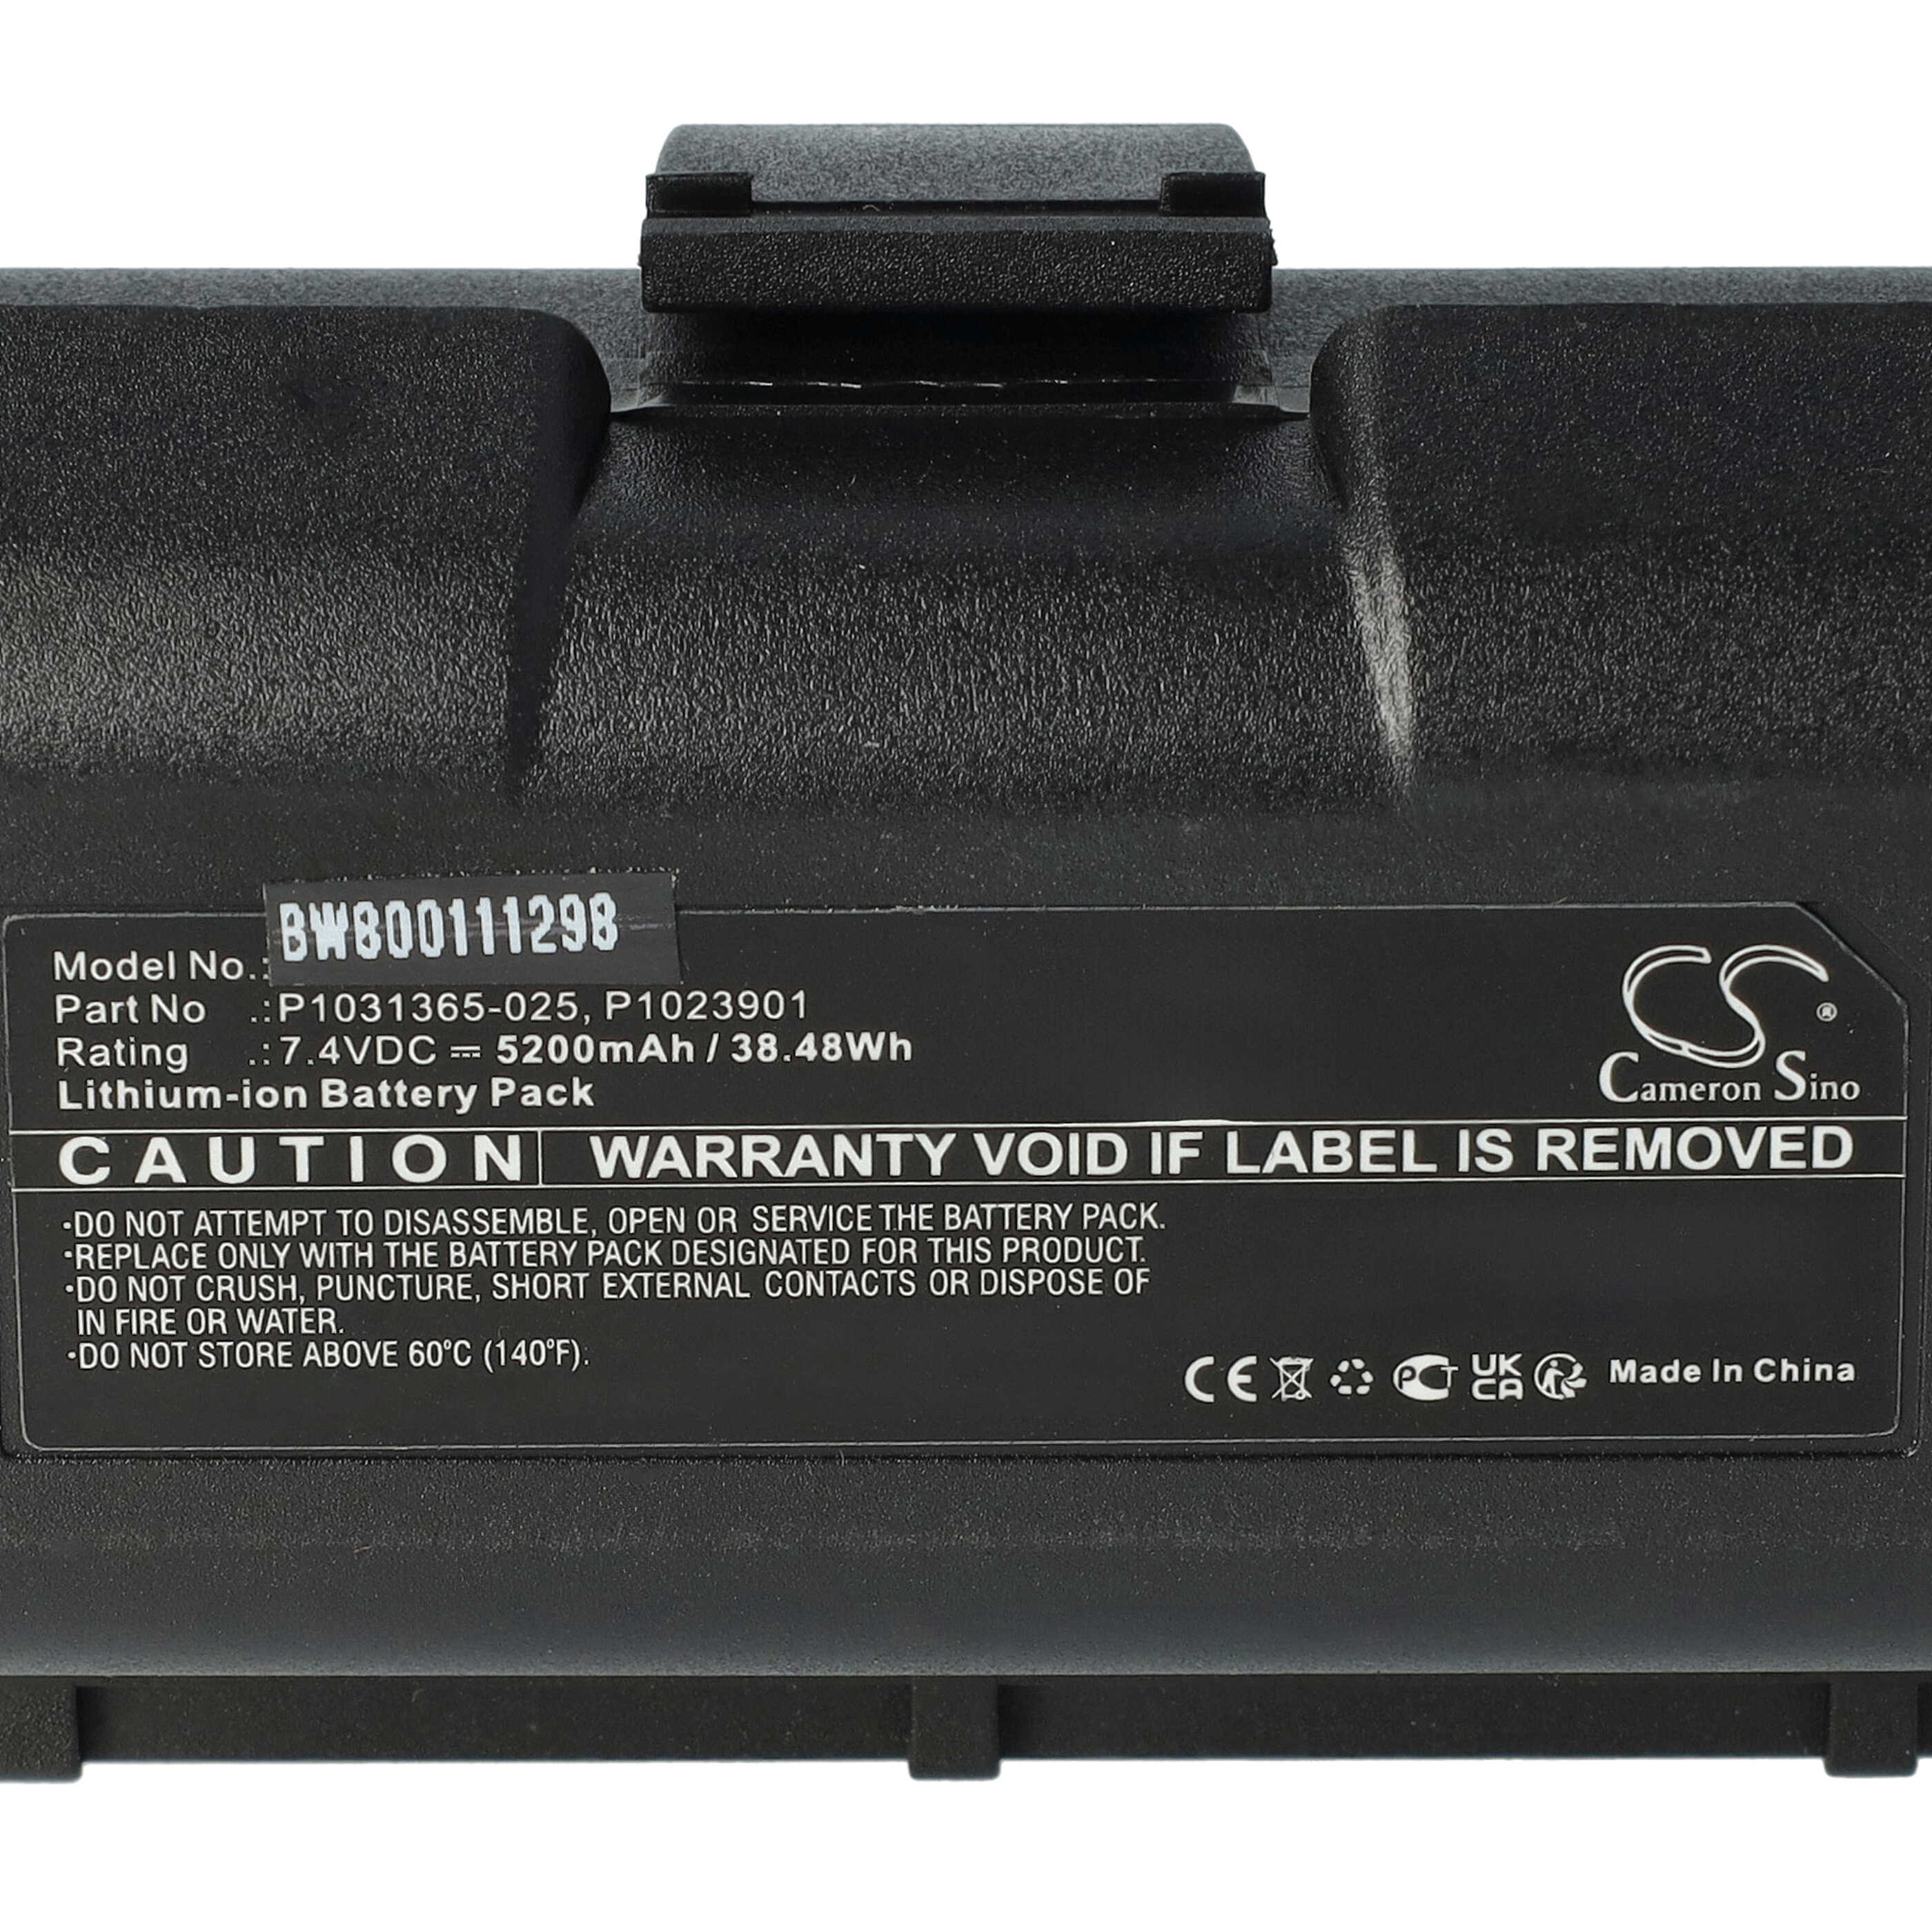 Akumulator do drukarki / drukarki etykiet zamiennik Zebra AT16004, BTRY-MPP-34MA1-01 - 5200 mAh 7,4 V Li-Ion